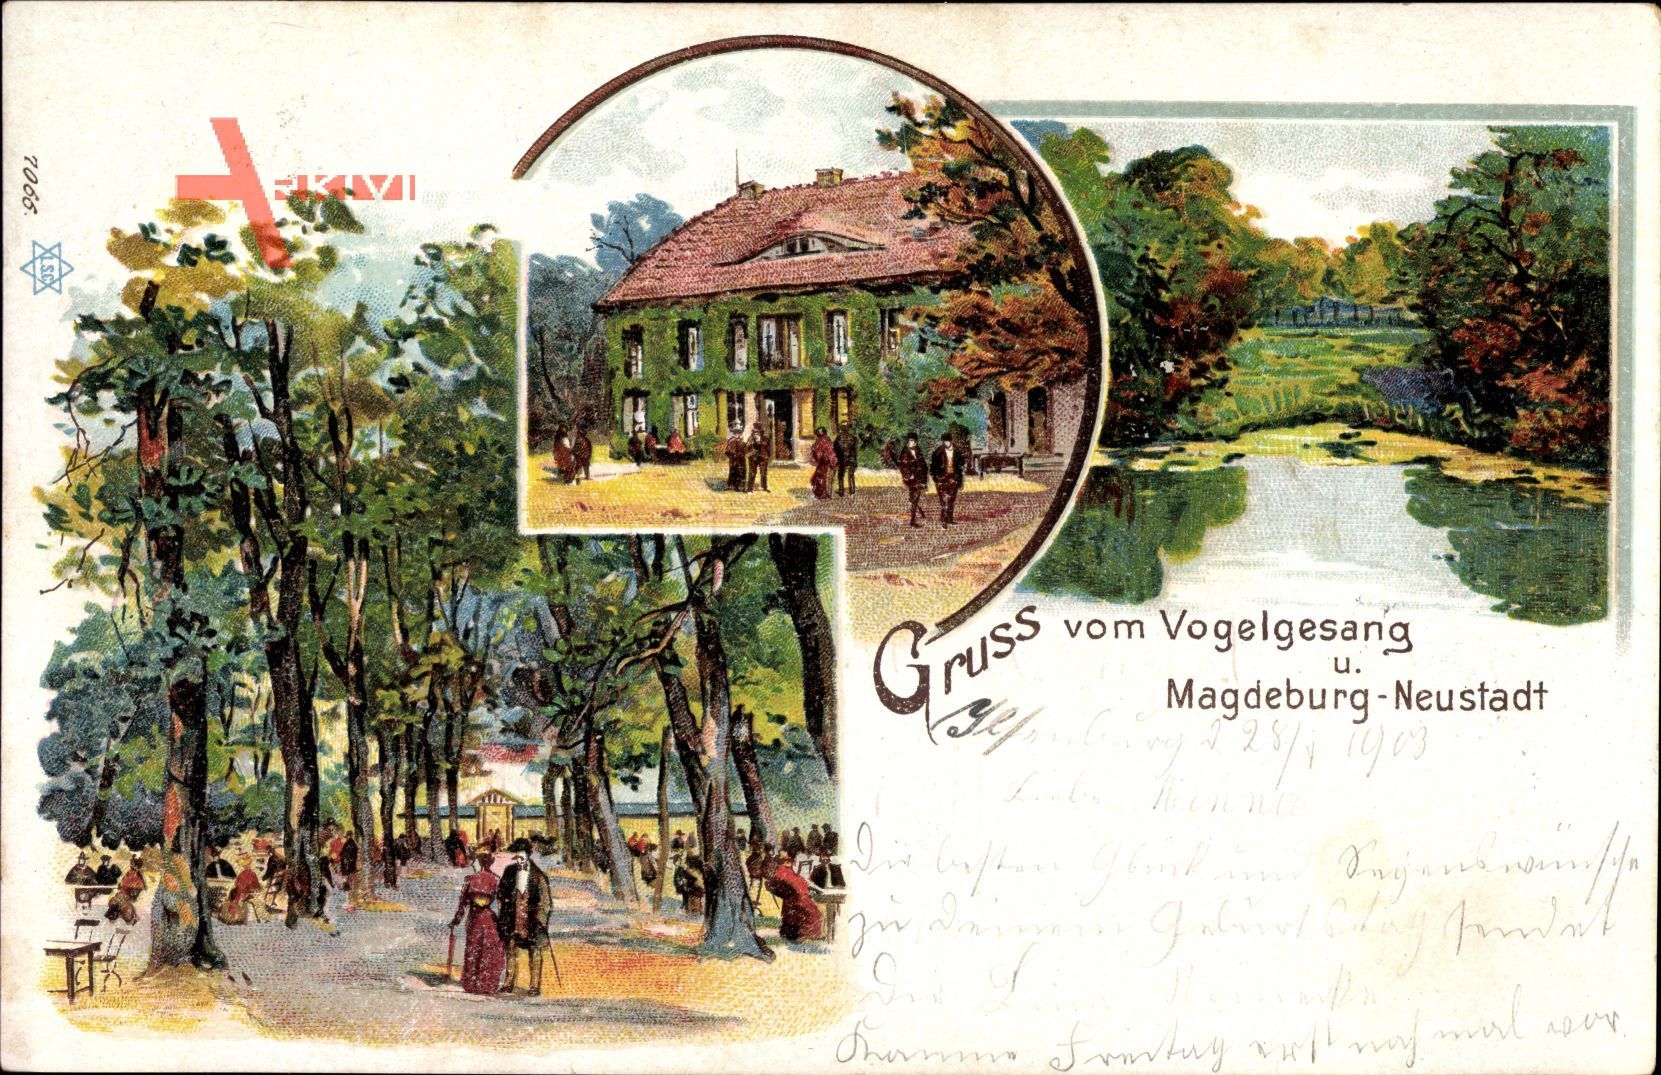 Magdeburg Neustadt in Sachsen Anhalt, Gasthaus Vogelsang, Garten